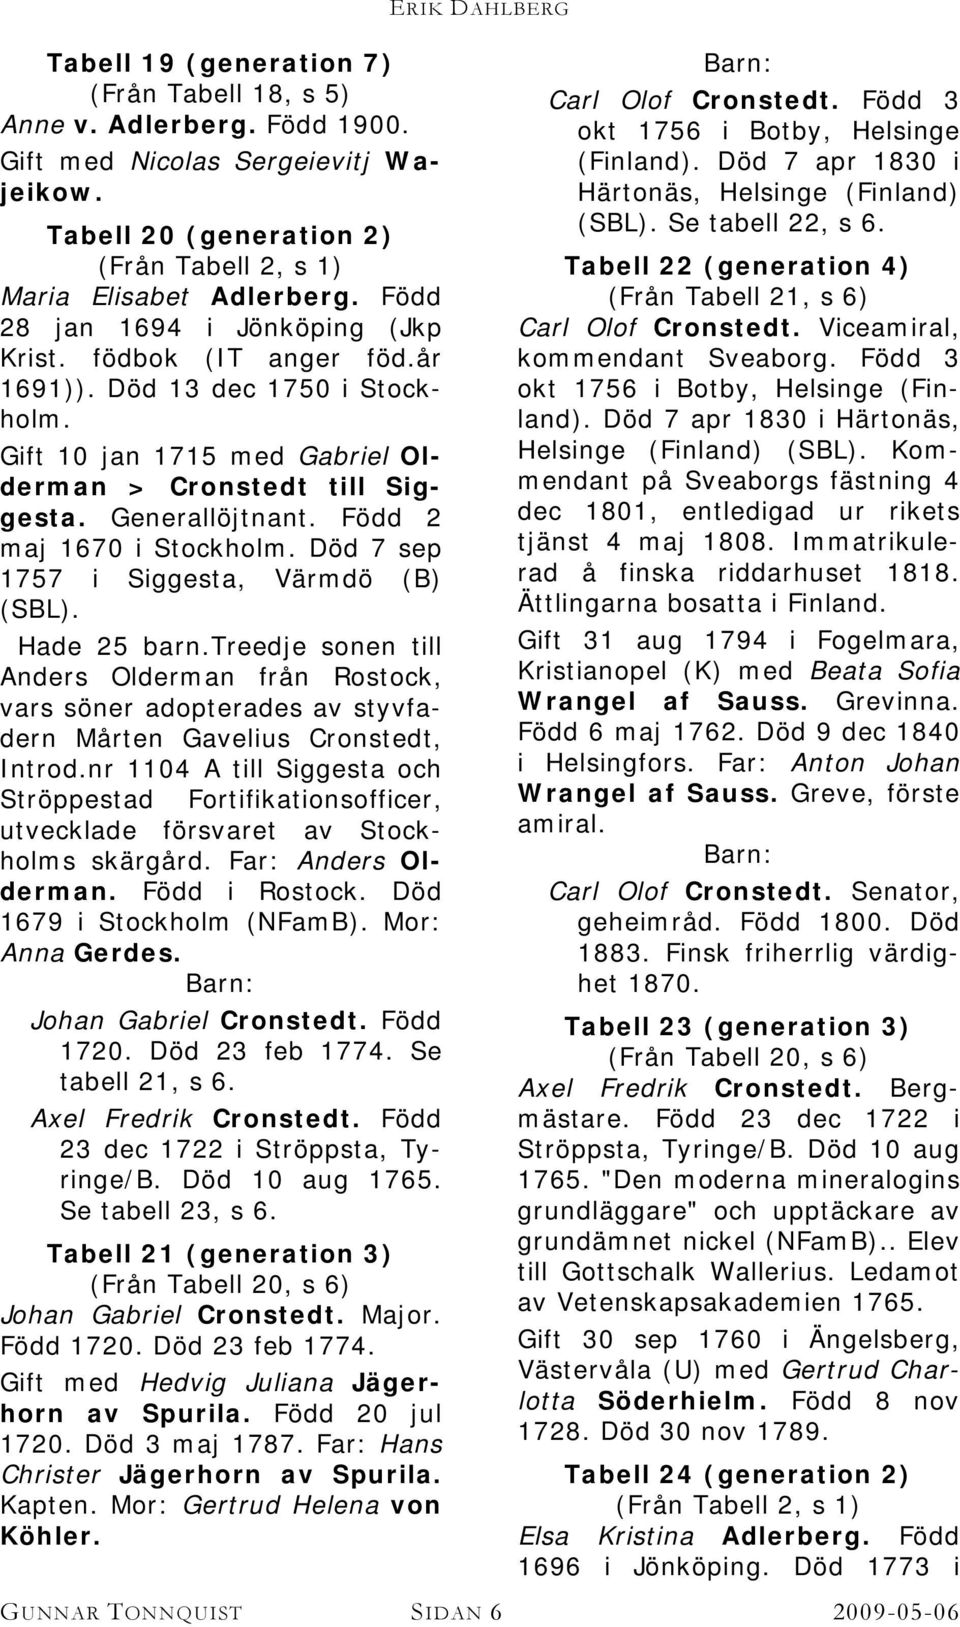 Född 2 maj 1670 i Stockholm. Död 7 sep 1757 i Siggesta, Värmdö (B) (SBL). Hade 25 barn.